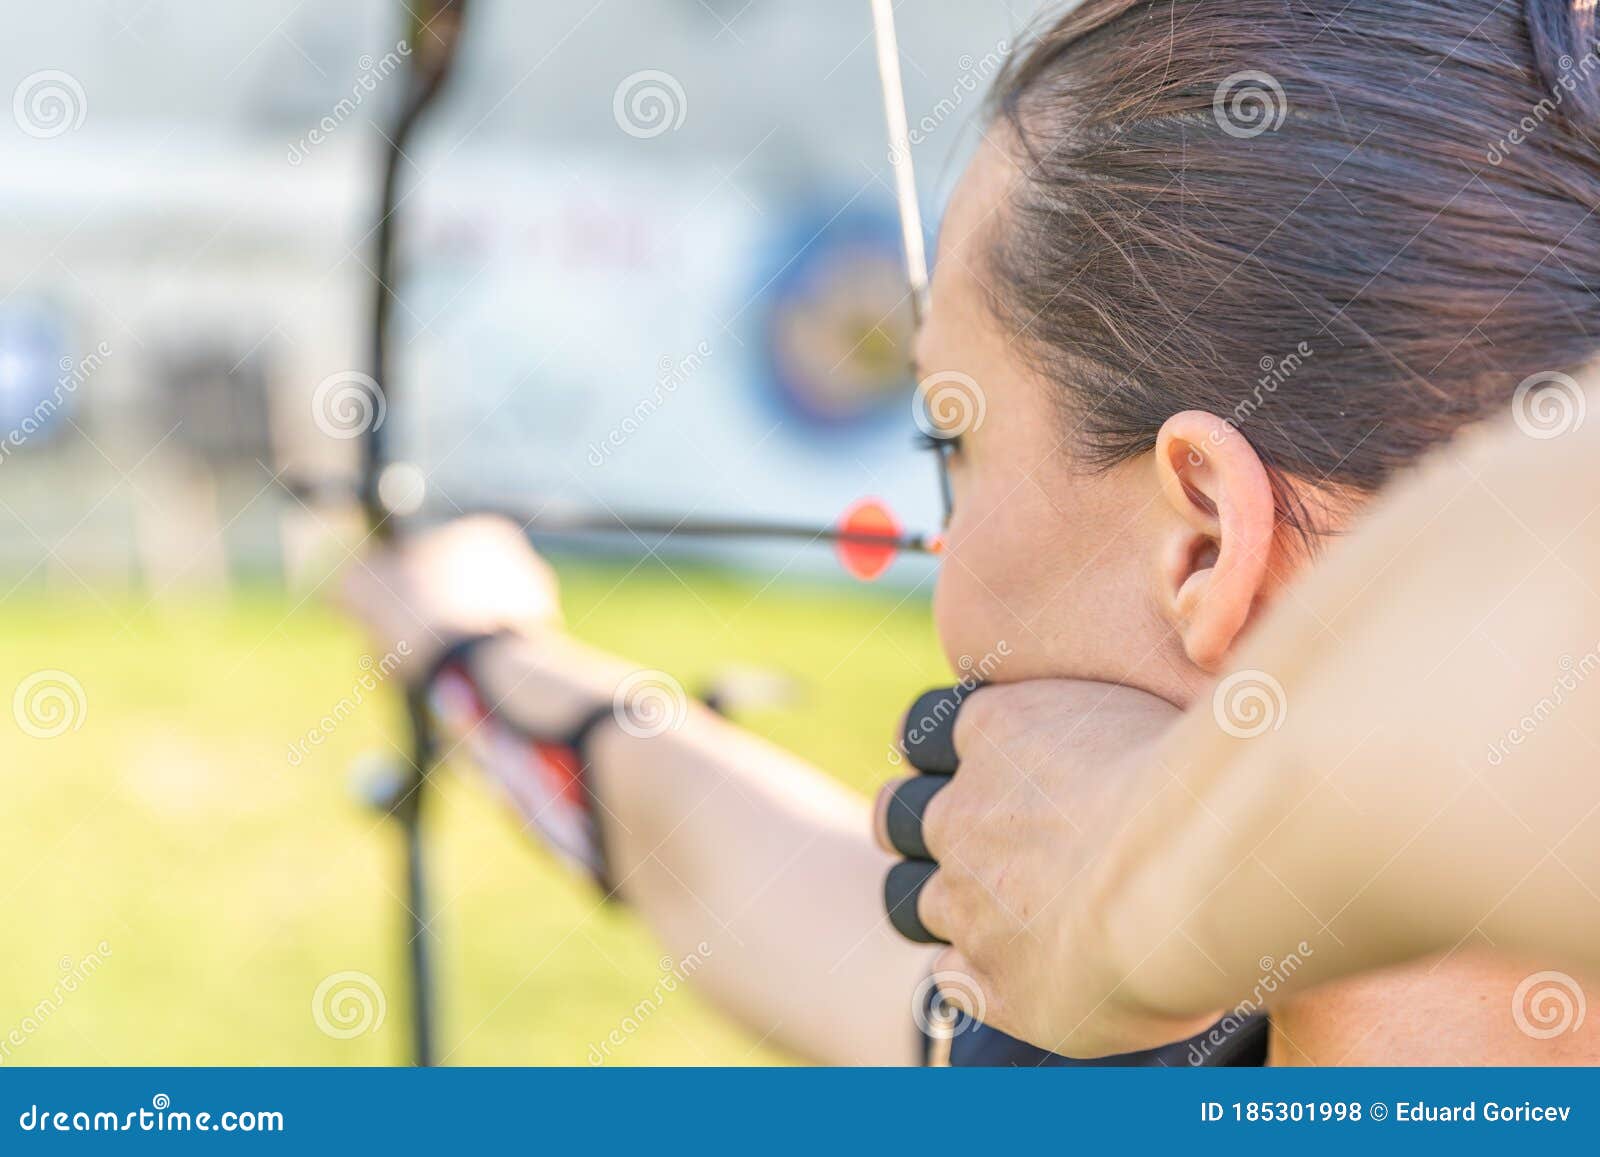 弓箭女子在公园里练习射箭 库存图片. 图片 包括有 绿色, 命中, 目的, 女性, 设备, 浓度, 业余爱好 - 232452911